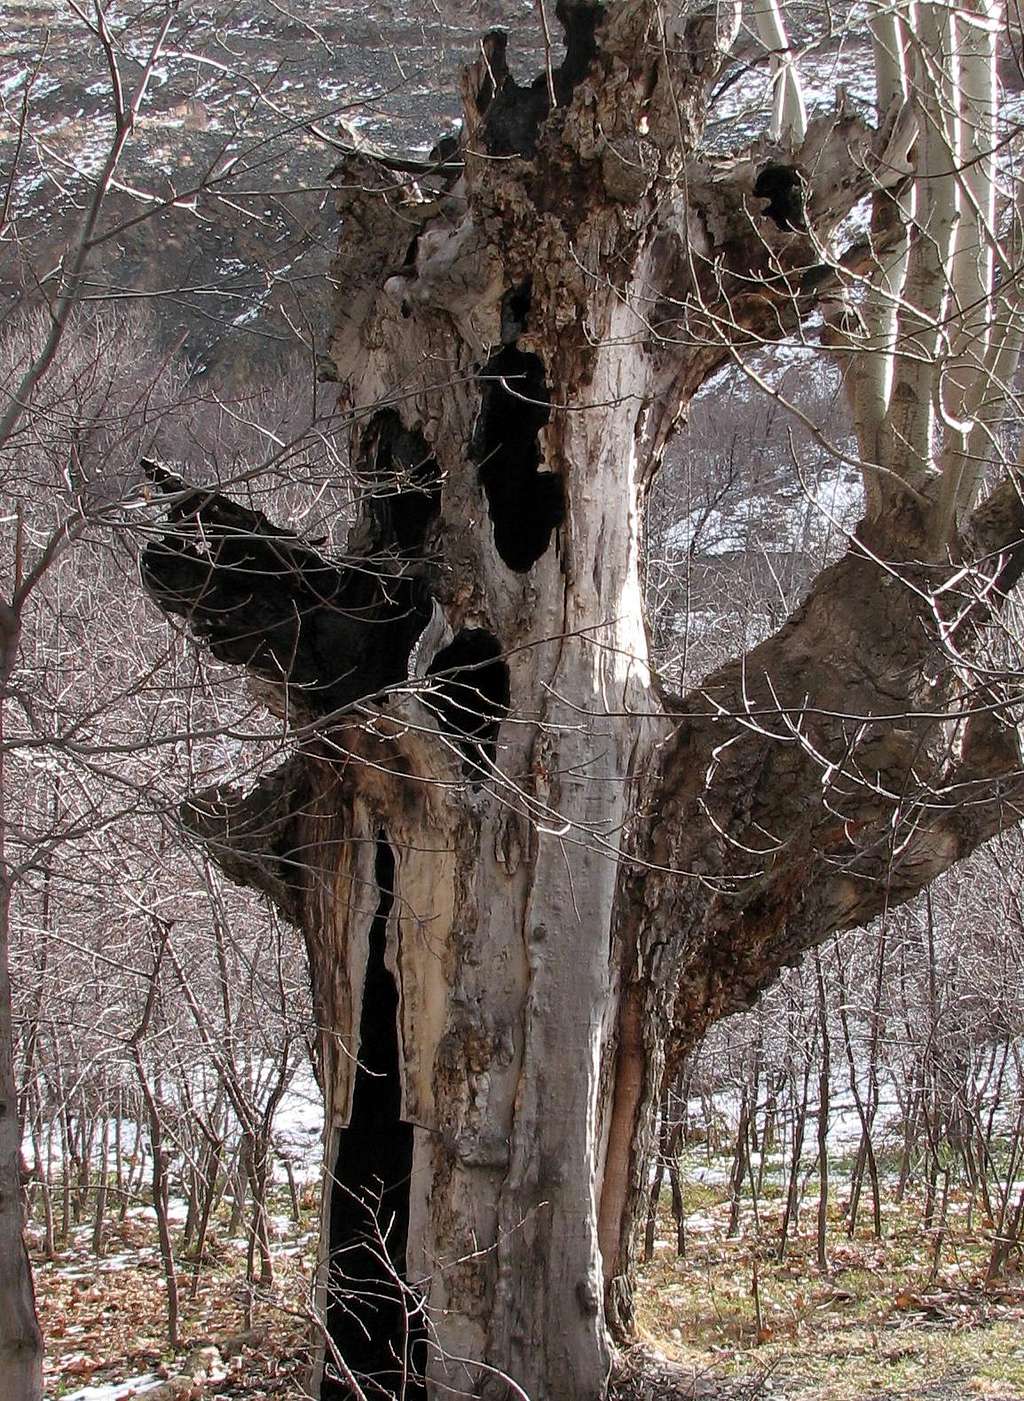 Strang Tree